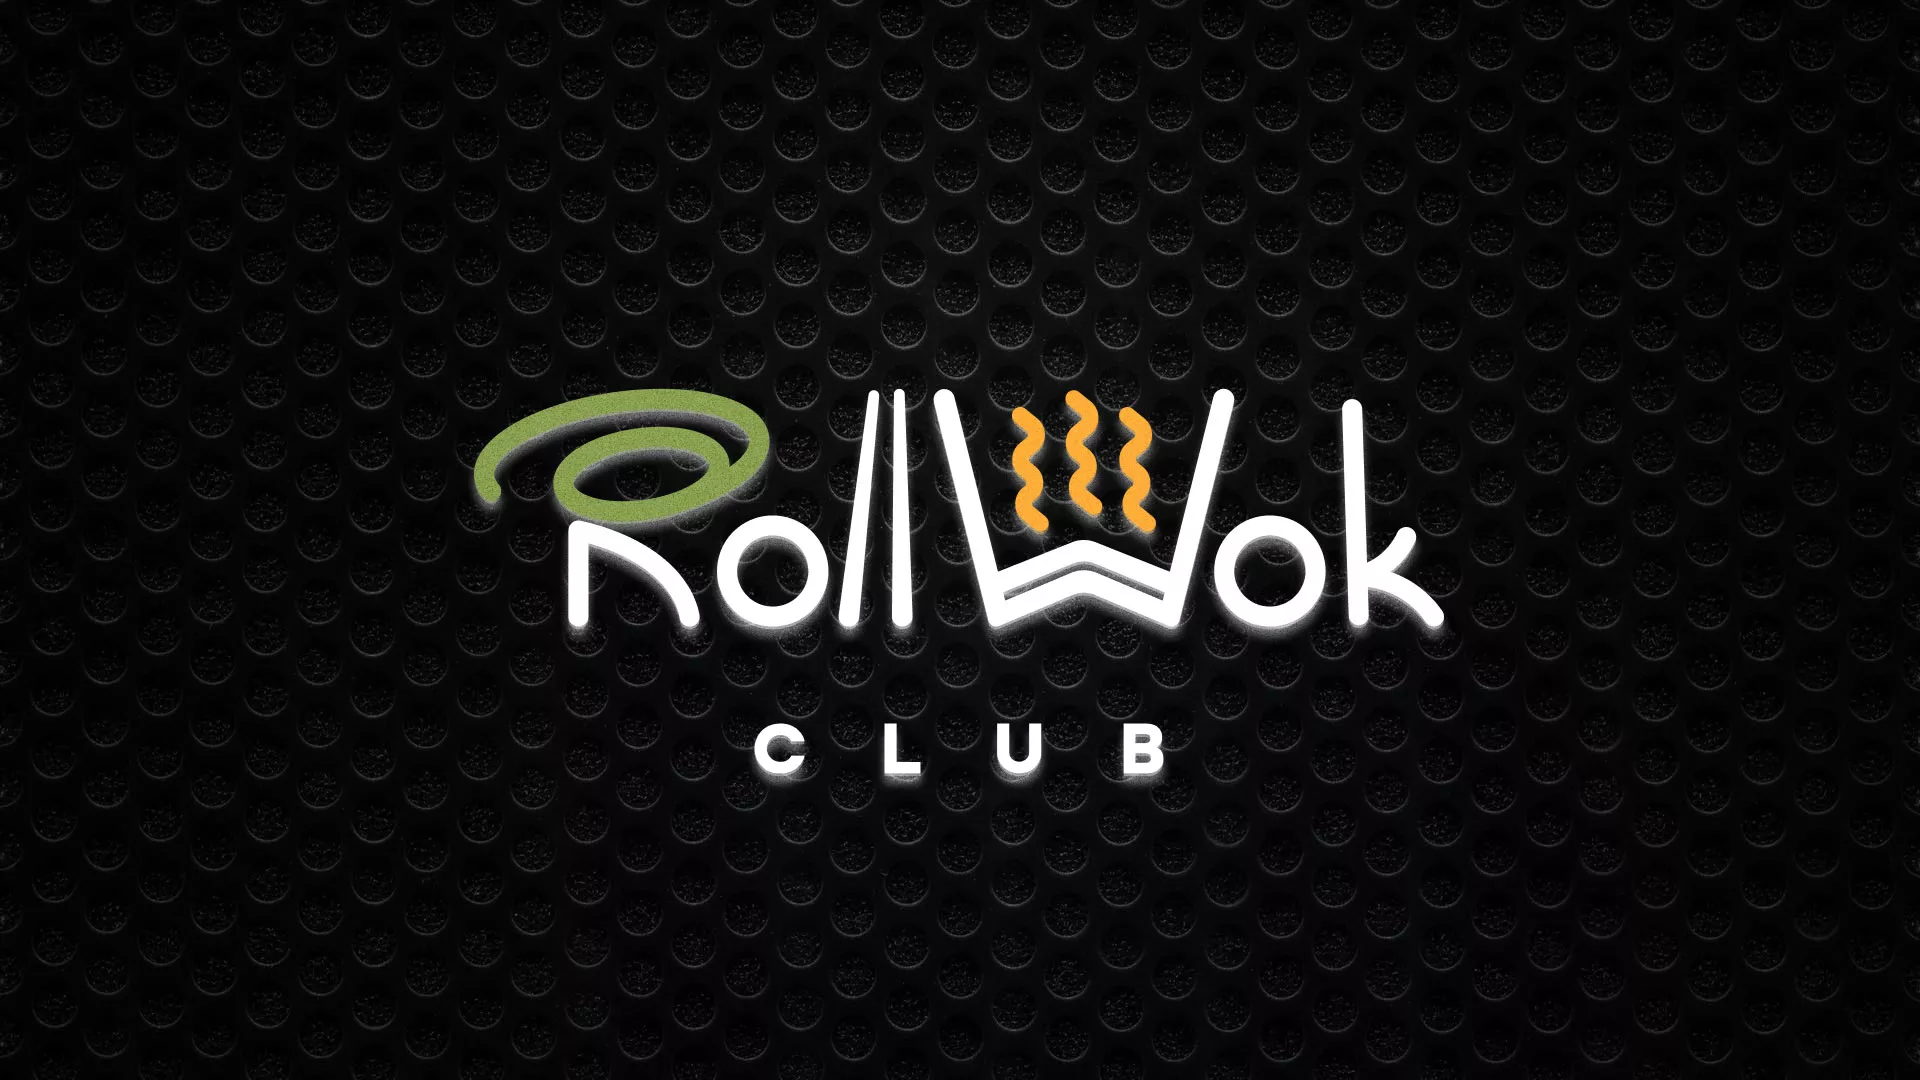 Брендирование торговых точек суши-бара «Roll Wok Club» в Воронеже